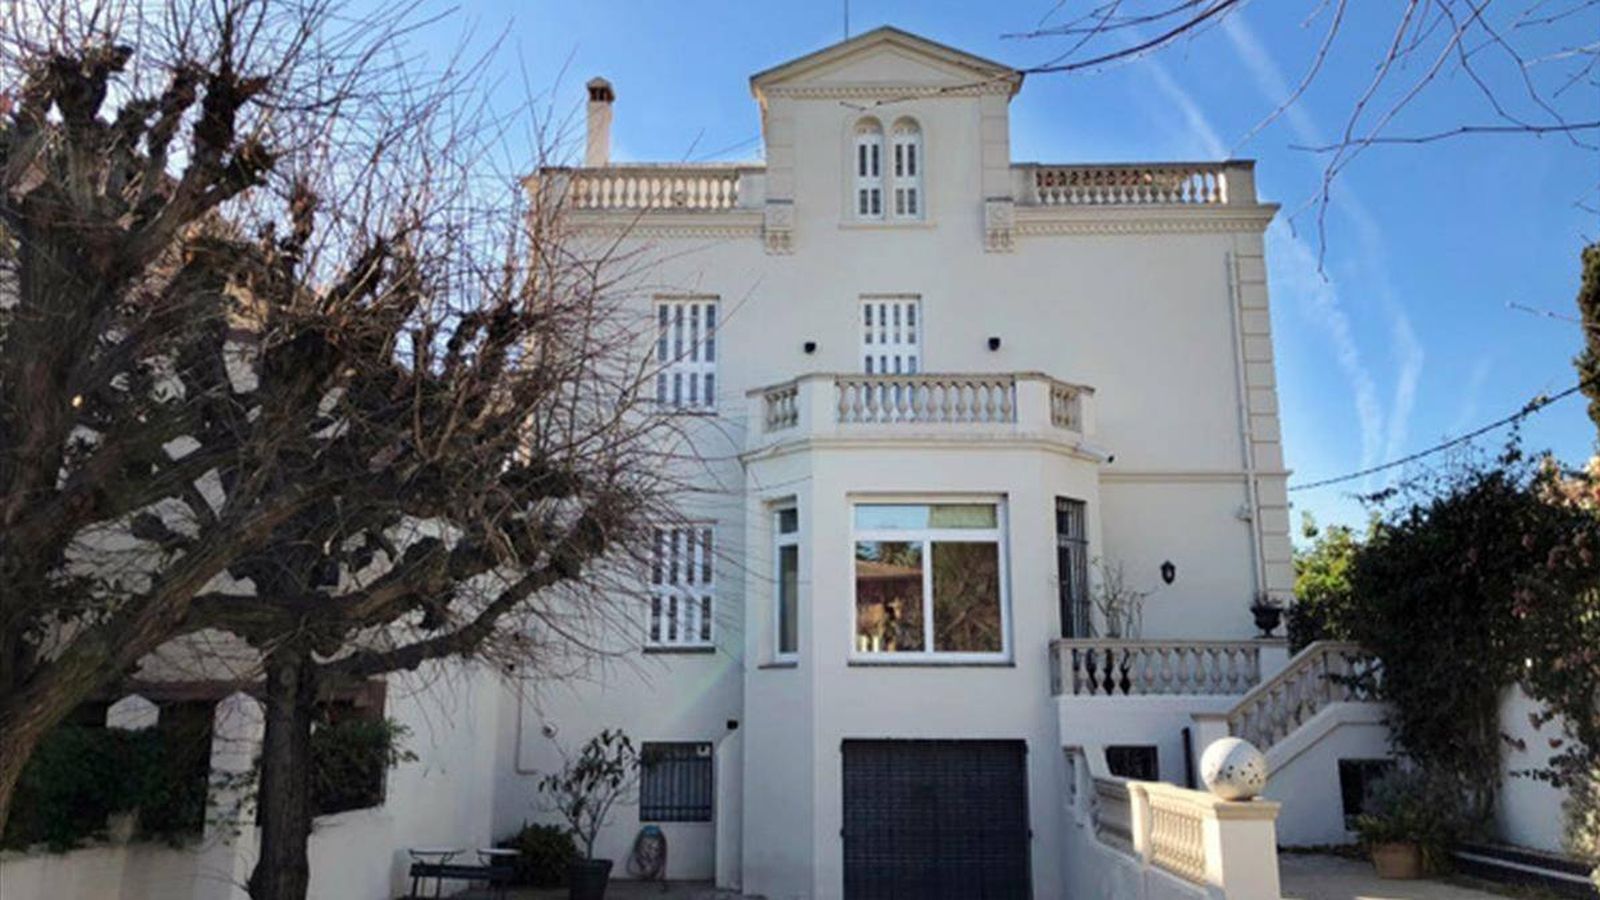 Foto: La agencia inmobiliaria Luxury Font vende la casa de Johan Cruyff en Barcelona.